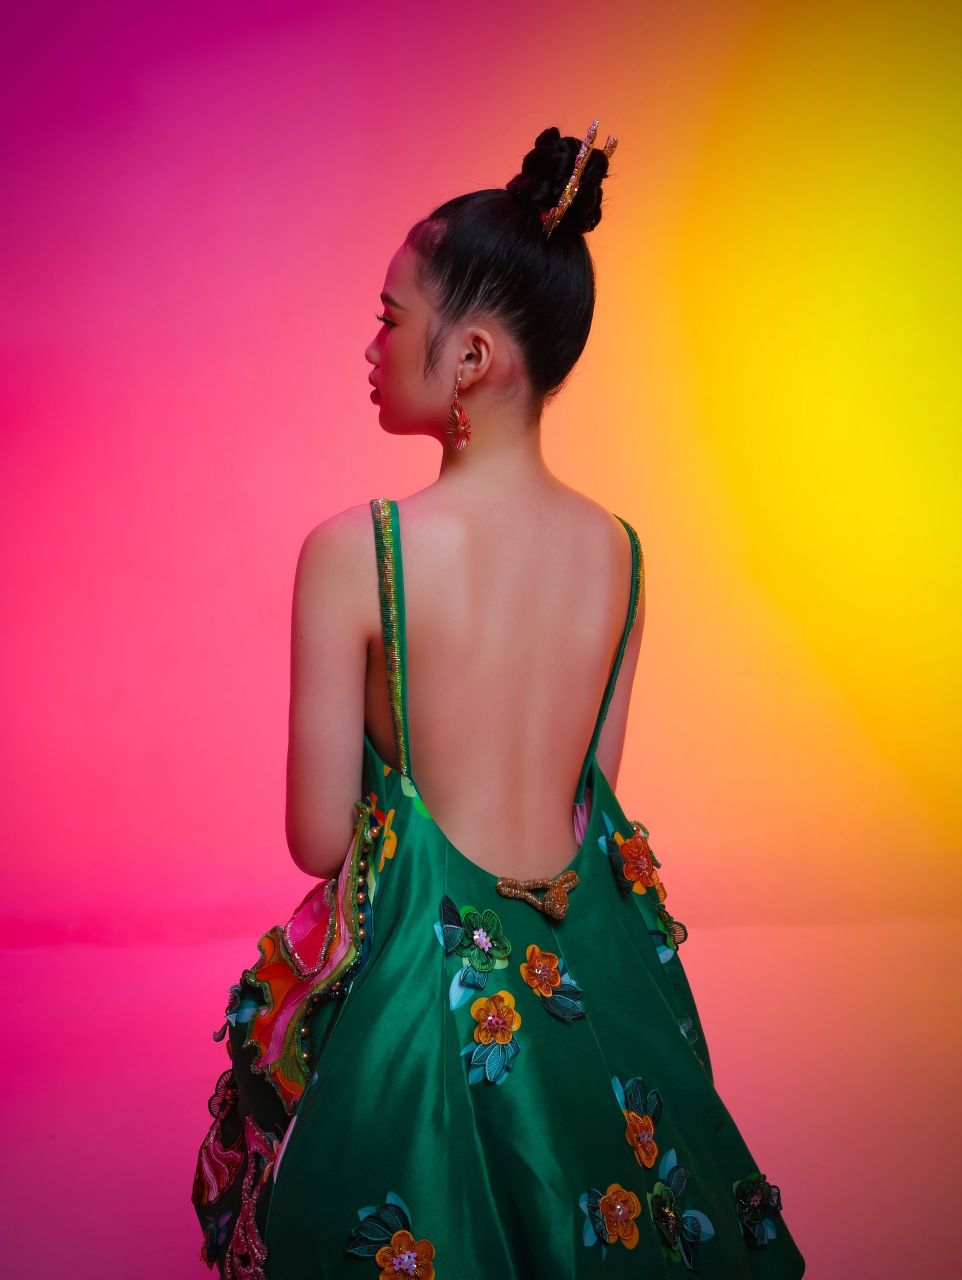 Bao Ha13 Mẫu nhí Bảo Hà đẹp lạ trong bộ ảnh lấy cảm hứng từ văn hóa Á Đông